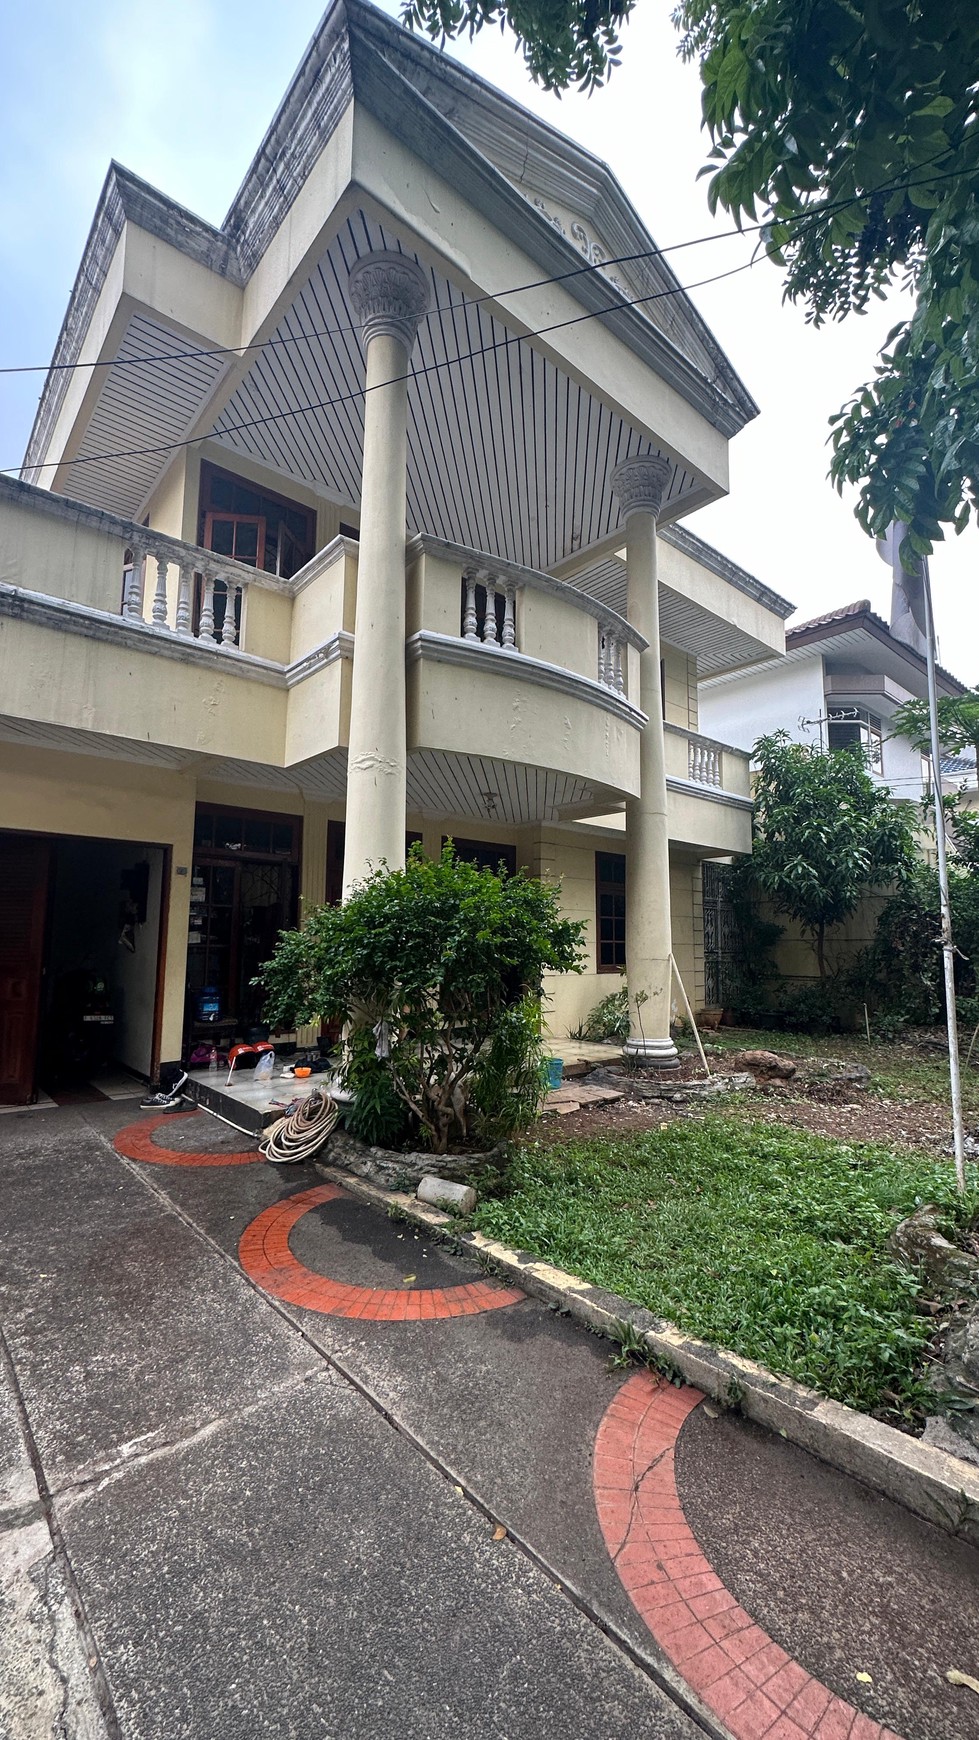 Rumah Bagus Di Jl Panglima Polim kebayoran Baru Jakarta Selatan